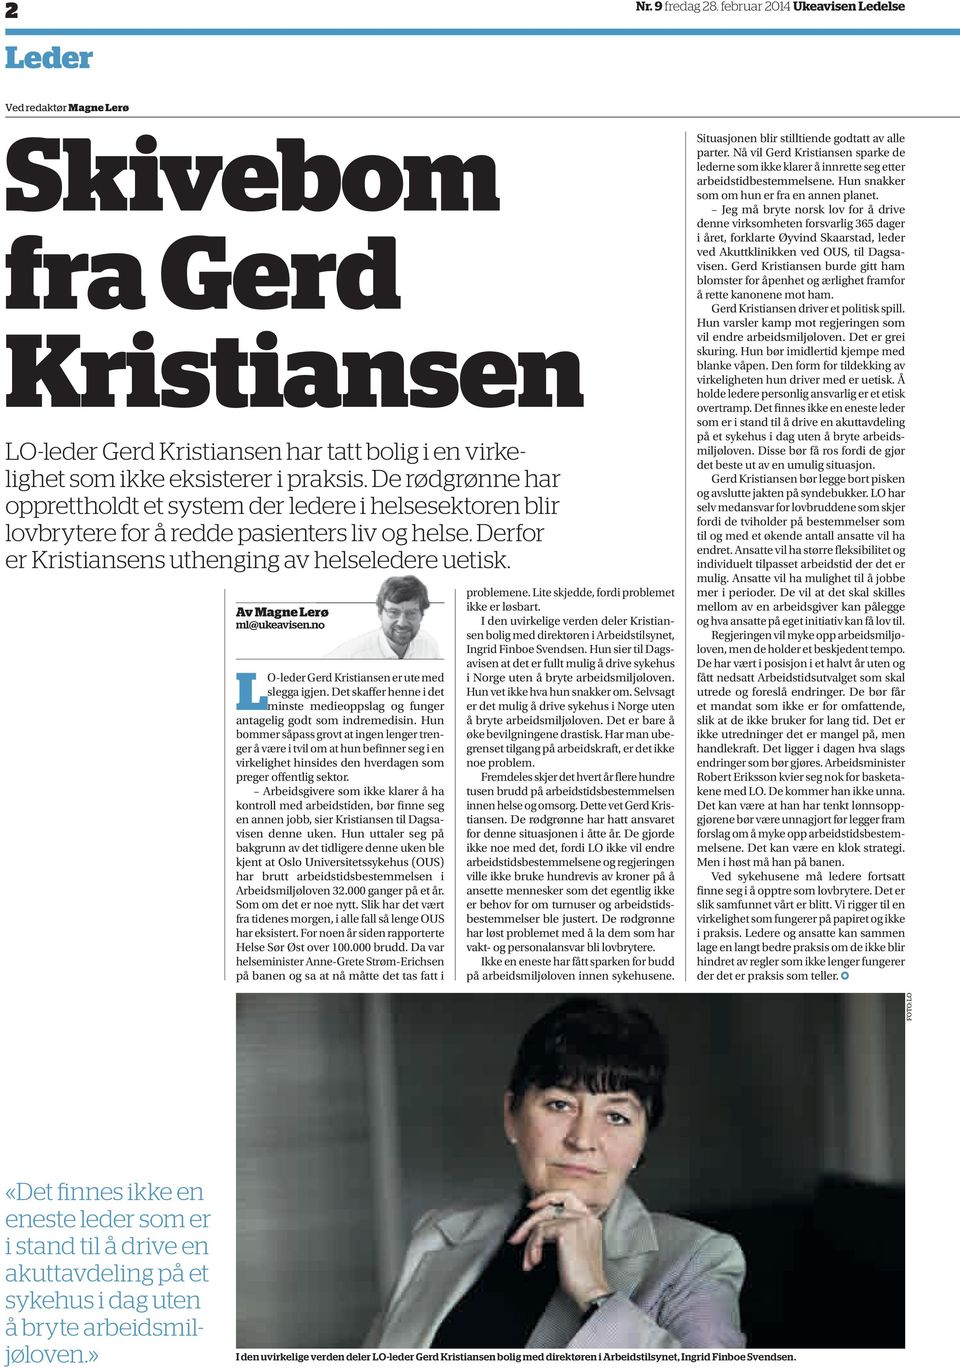 Av Magne Lerø ml@ukeavisen.no LO-leder Gerd Kristiansen er ute med slegga igjen. Det skaffer henne i det minste medieoppslag og funger antagelig godt som indremedisin.